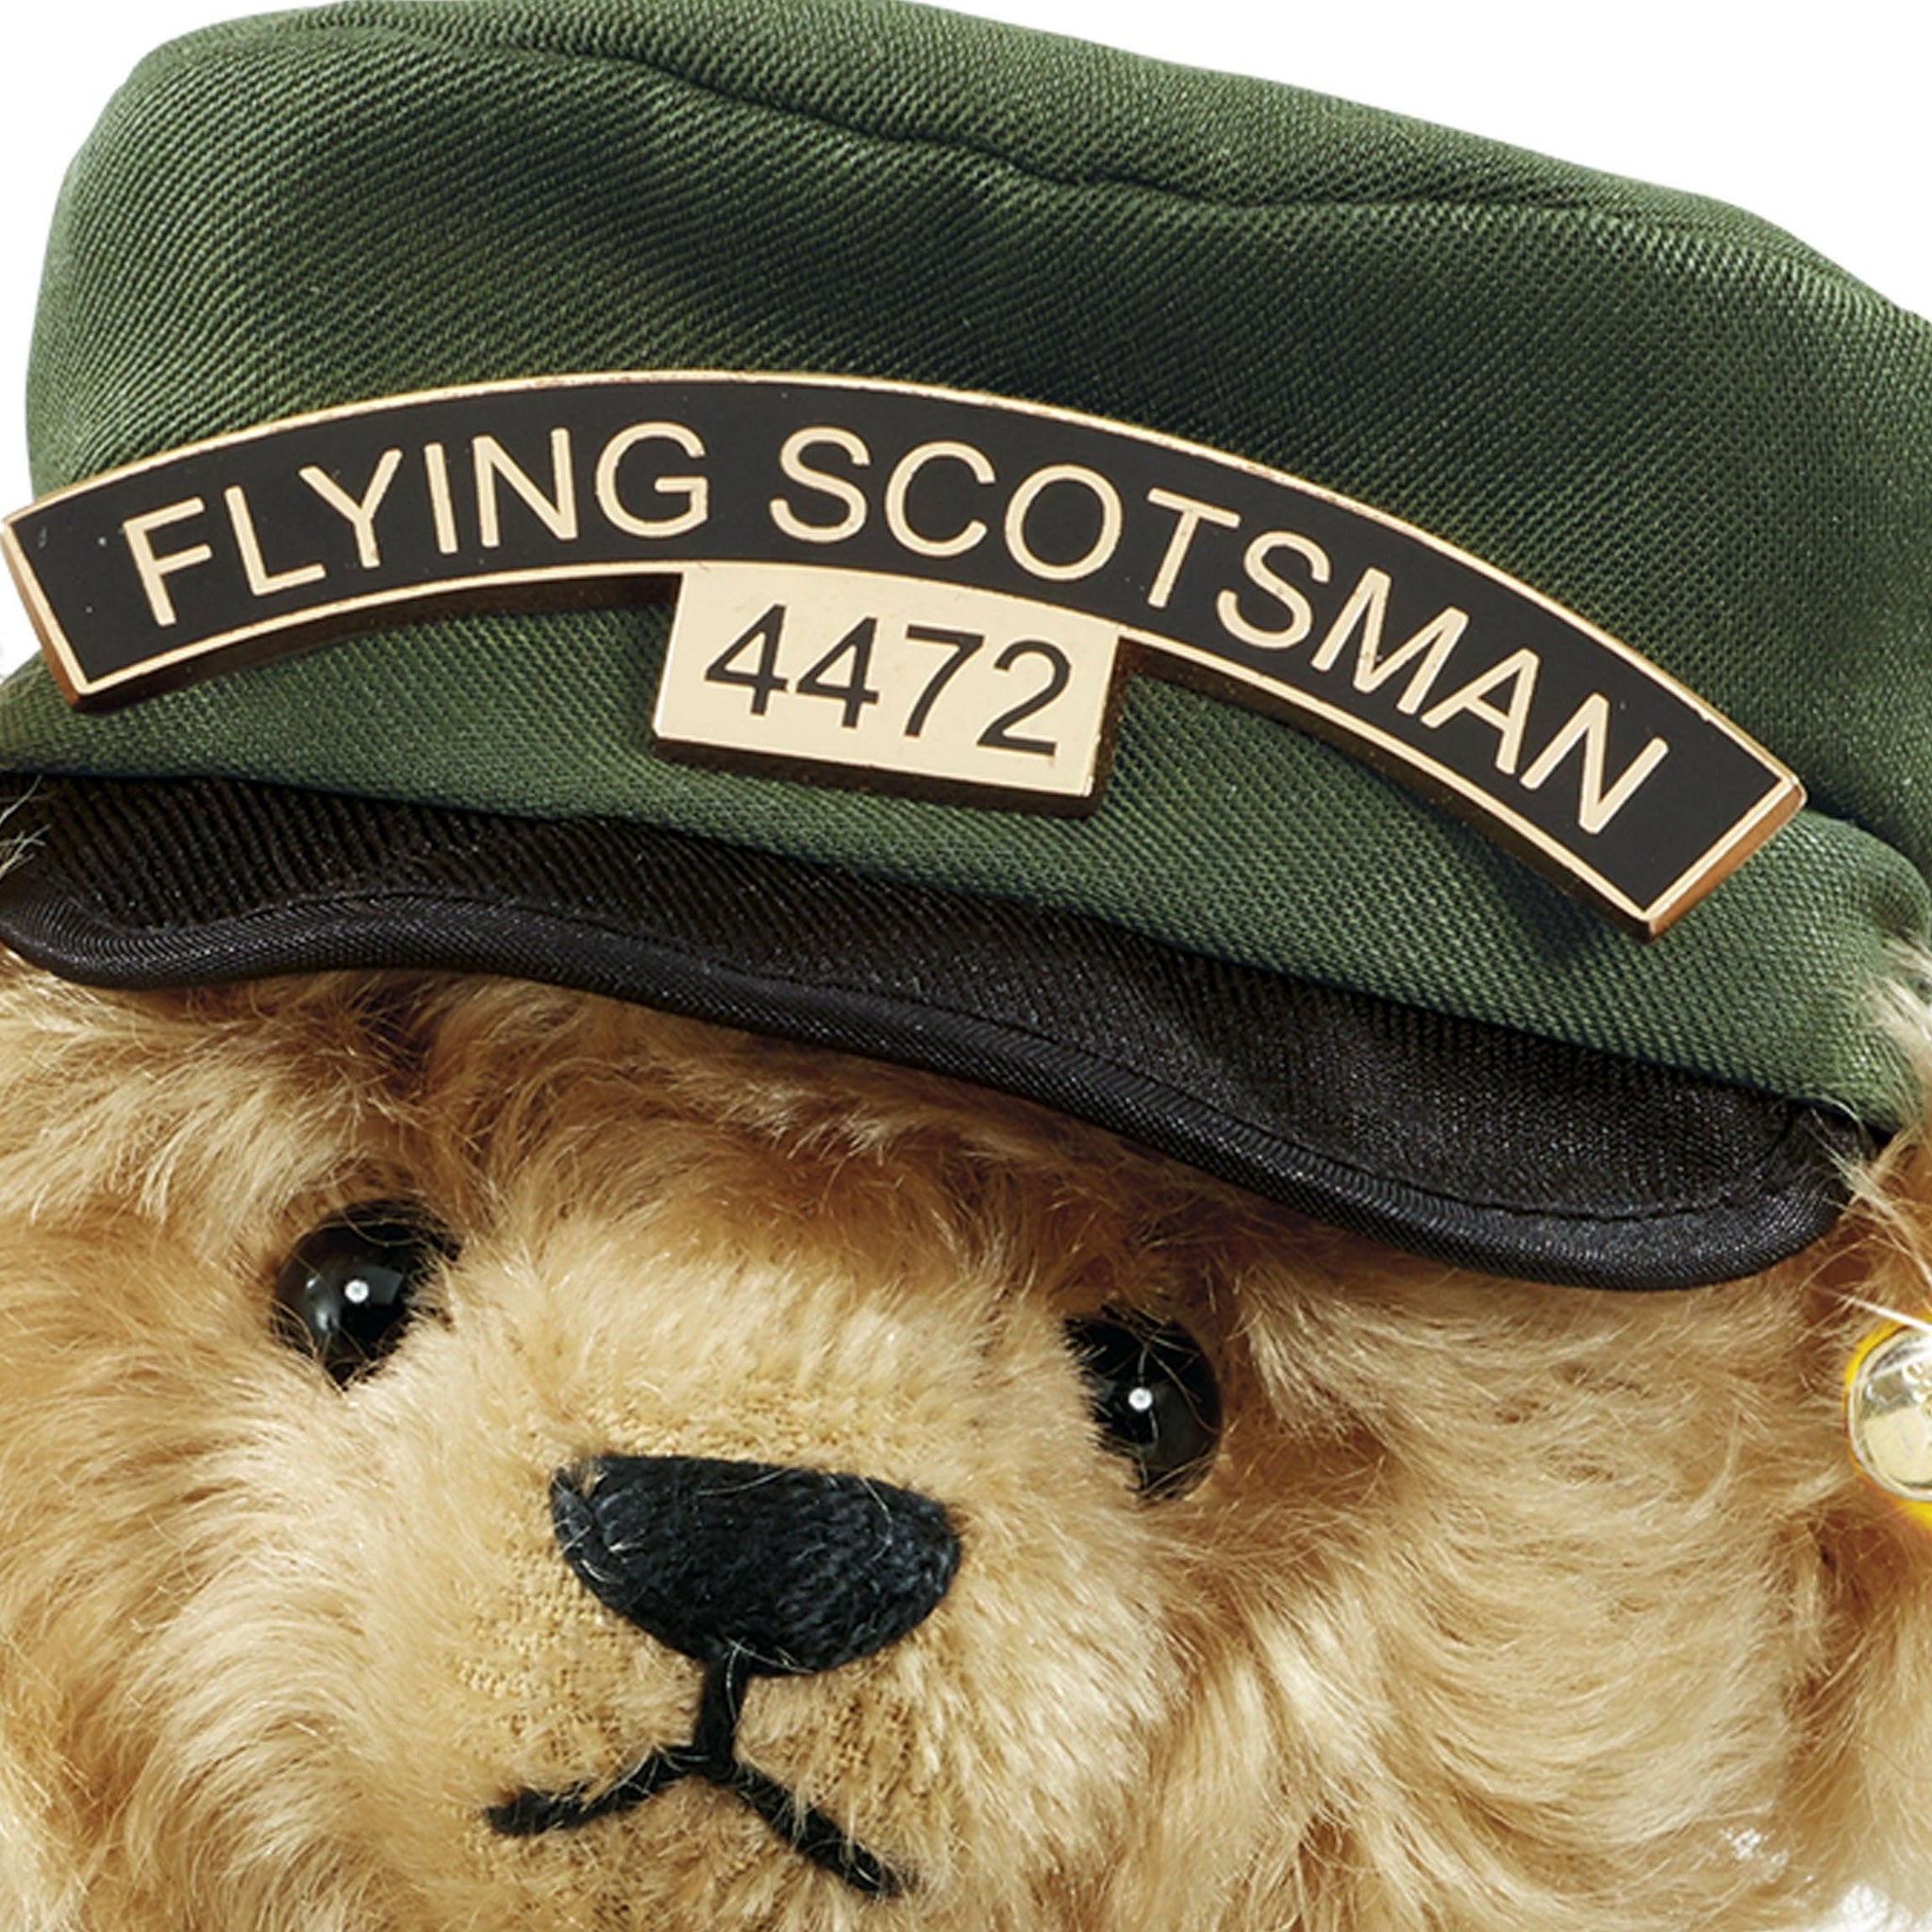 Bill The Flying Scotsman Bear by Steiff